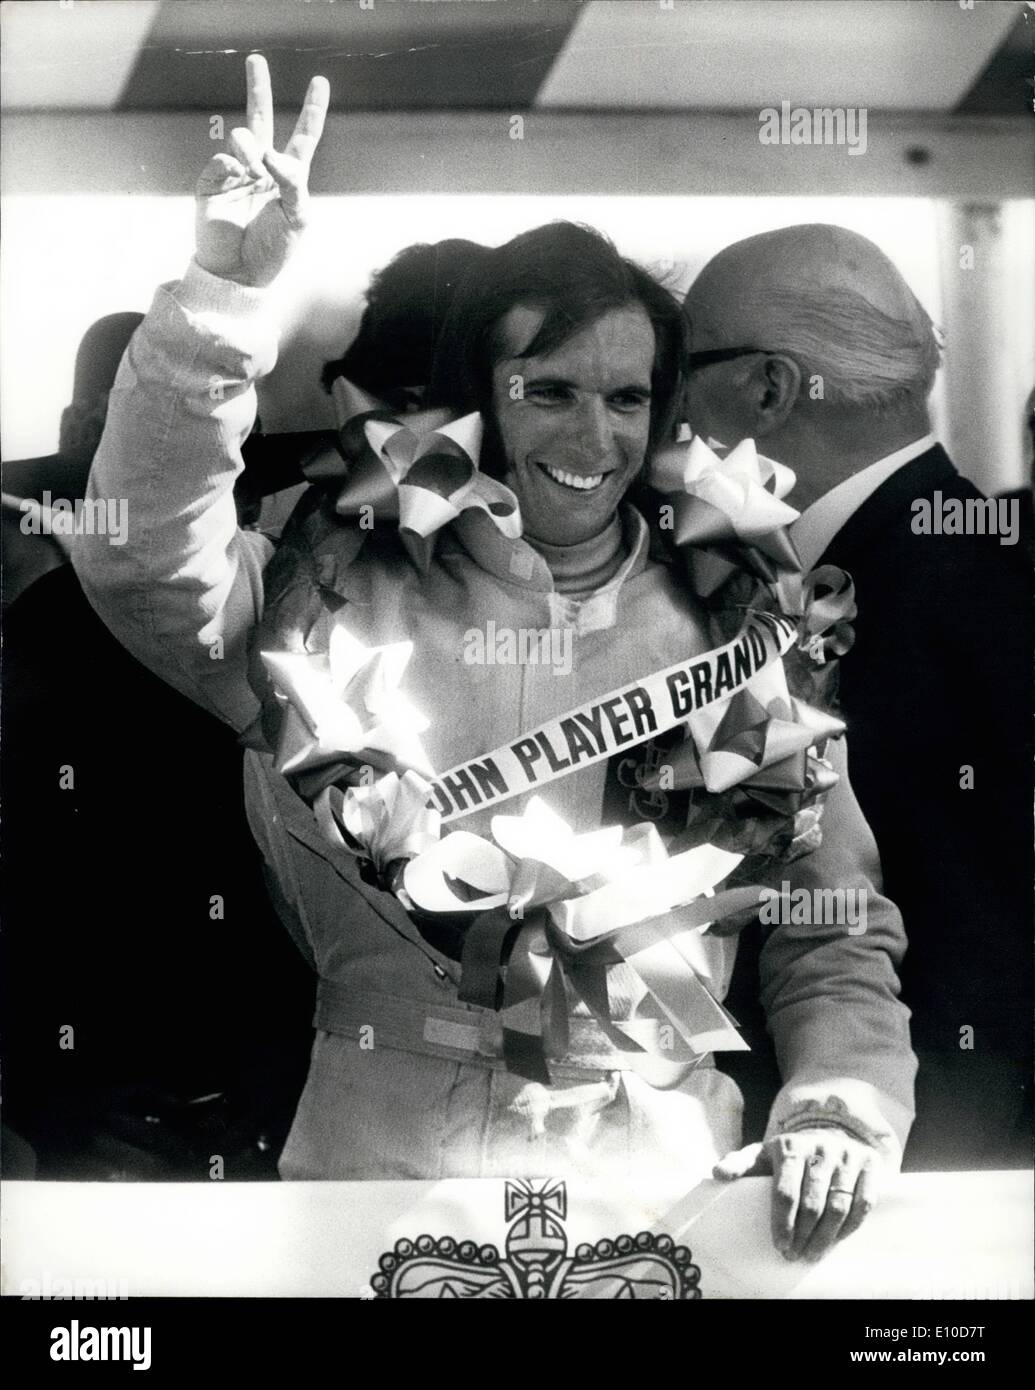 Juillet 07, 1972 - Fittipaldi remporte le Grand Prix John Player : Emerson Fittipaldi du Brésil, la conduite d'un John Player Team Lotus, aujourd'hui a remporté le Grand Prix Joueurs John (intégrant le Grand Prix de l'Europe) à Brands Hatch. Jackie Stewart, dans un Tyrrell - Ford, a terminé deuxième. Photo montre Emerson Fittipaldi donne la victoire après victoire d'aujourd'hui. Banque D'Images